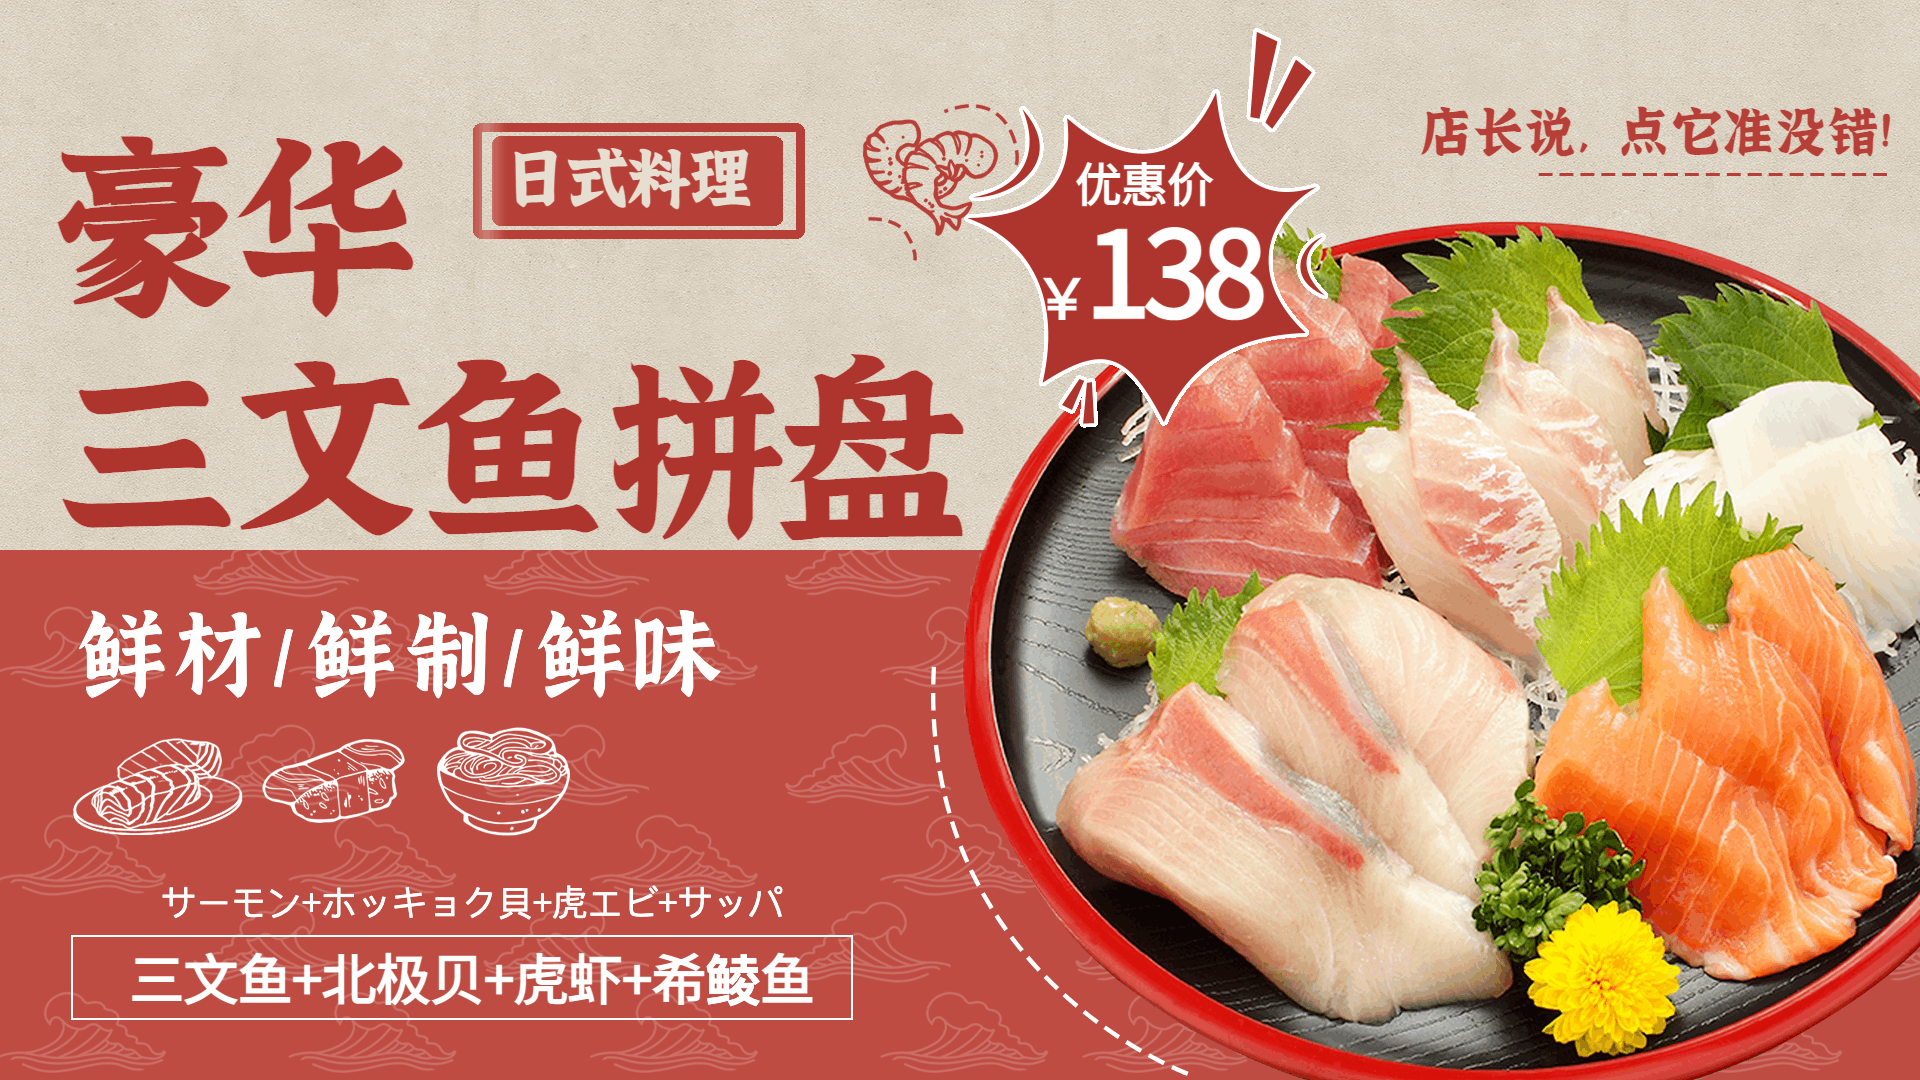 日本料理三文鱼拼盘促销活动菜品推荐创意横屏动图预览效果